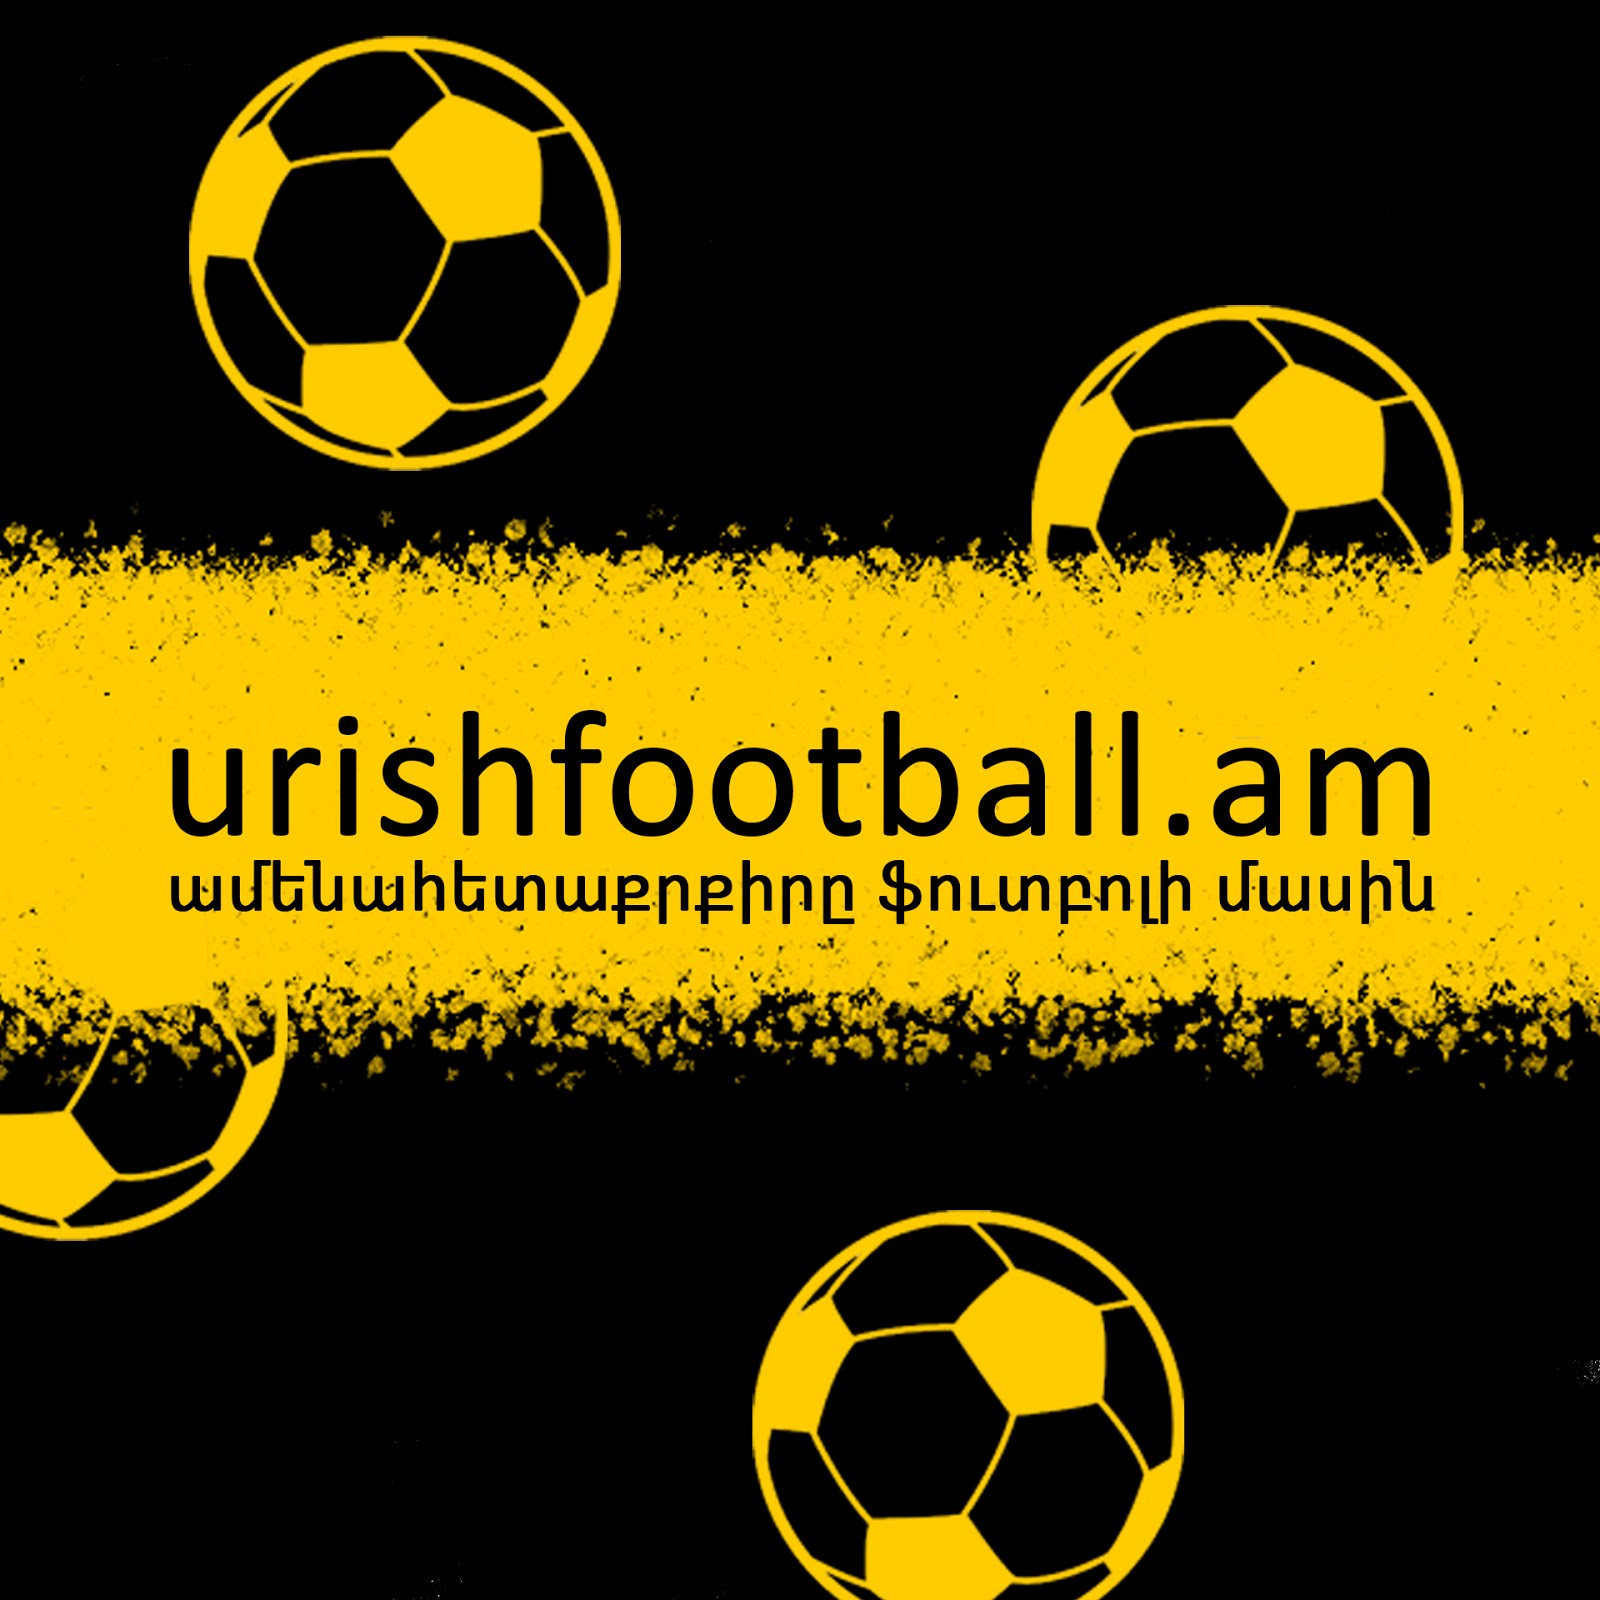 UrishFootball.am